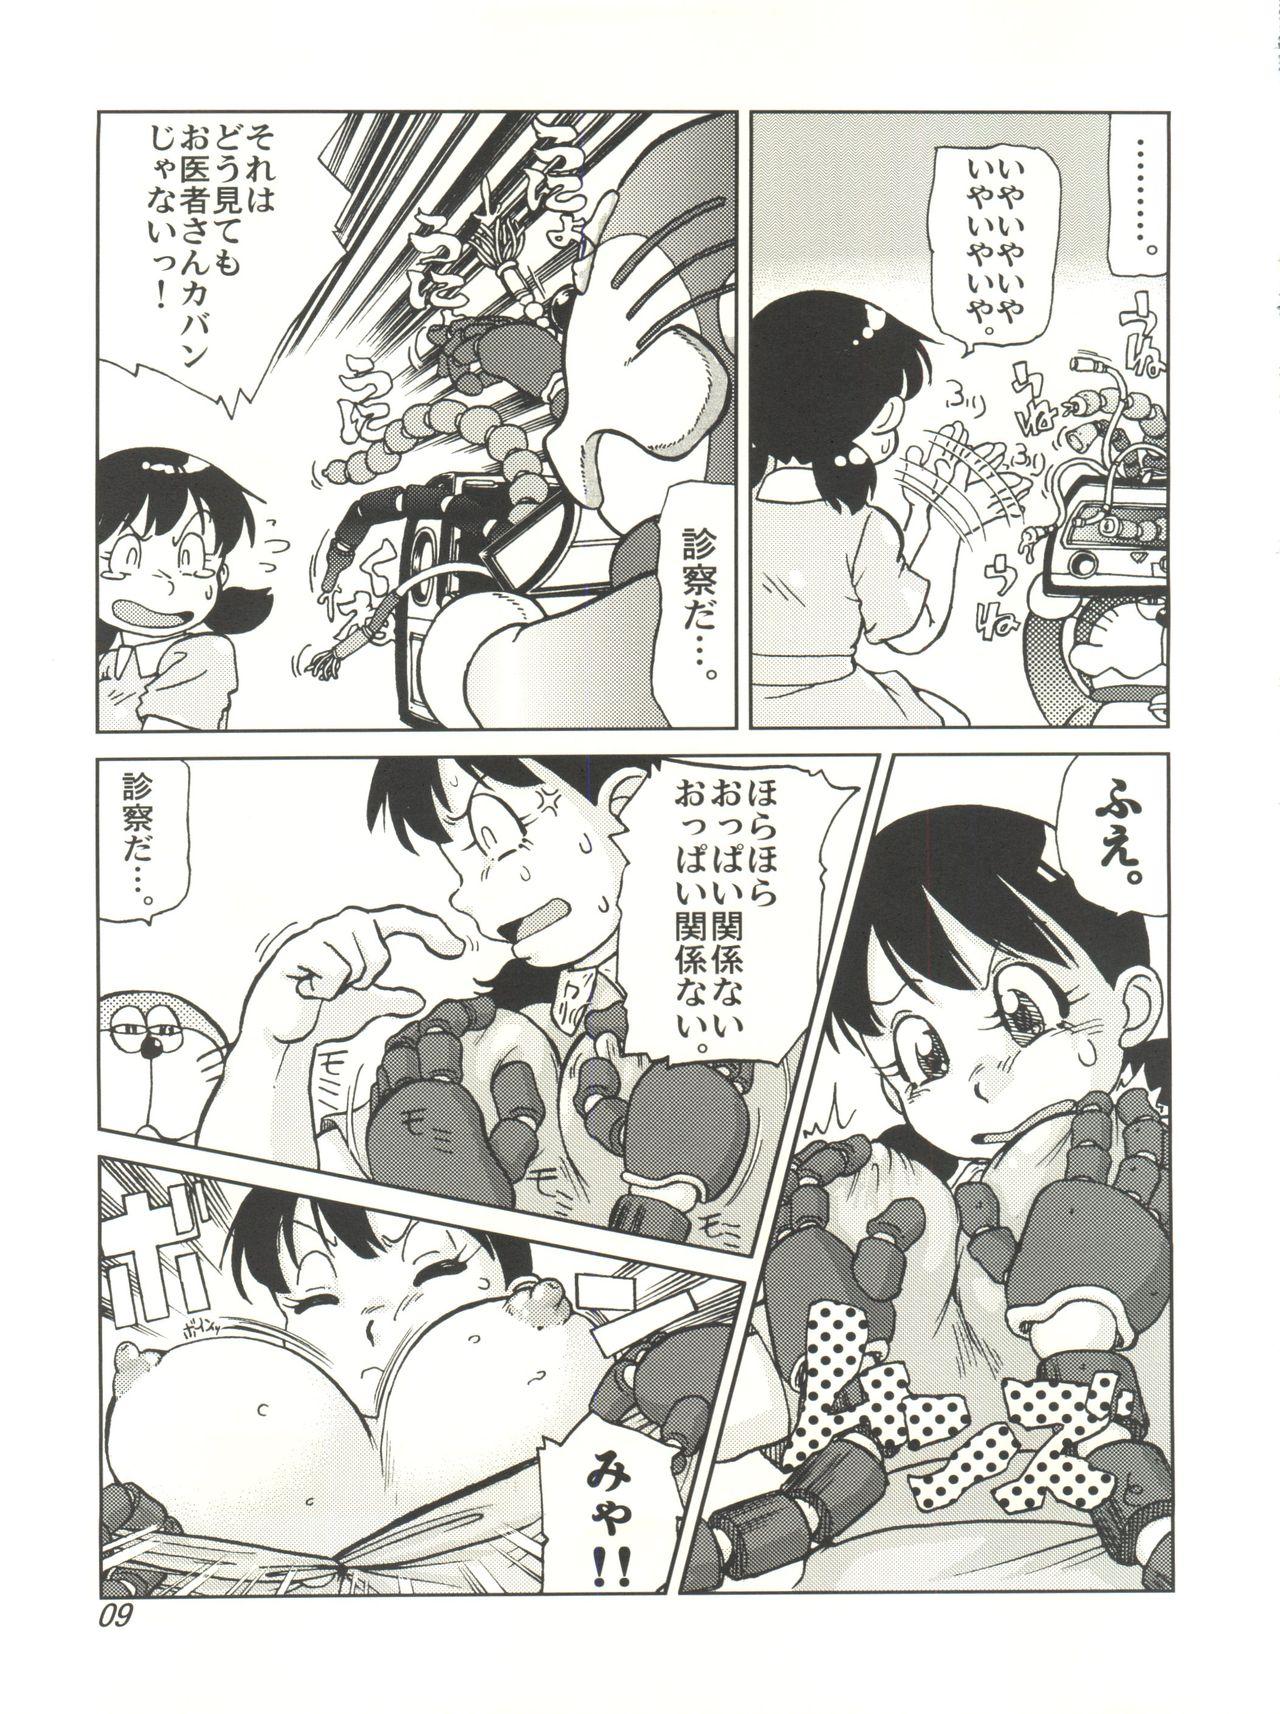 Sucking Cocks COUNTER DORA SHIZUKA & KAKUGARI GUARDIAN - Doraemon Omegle - Page 8